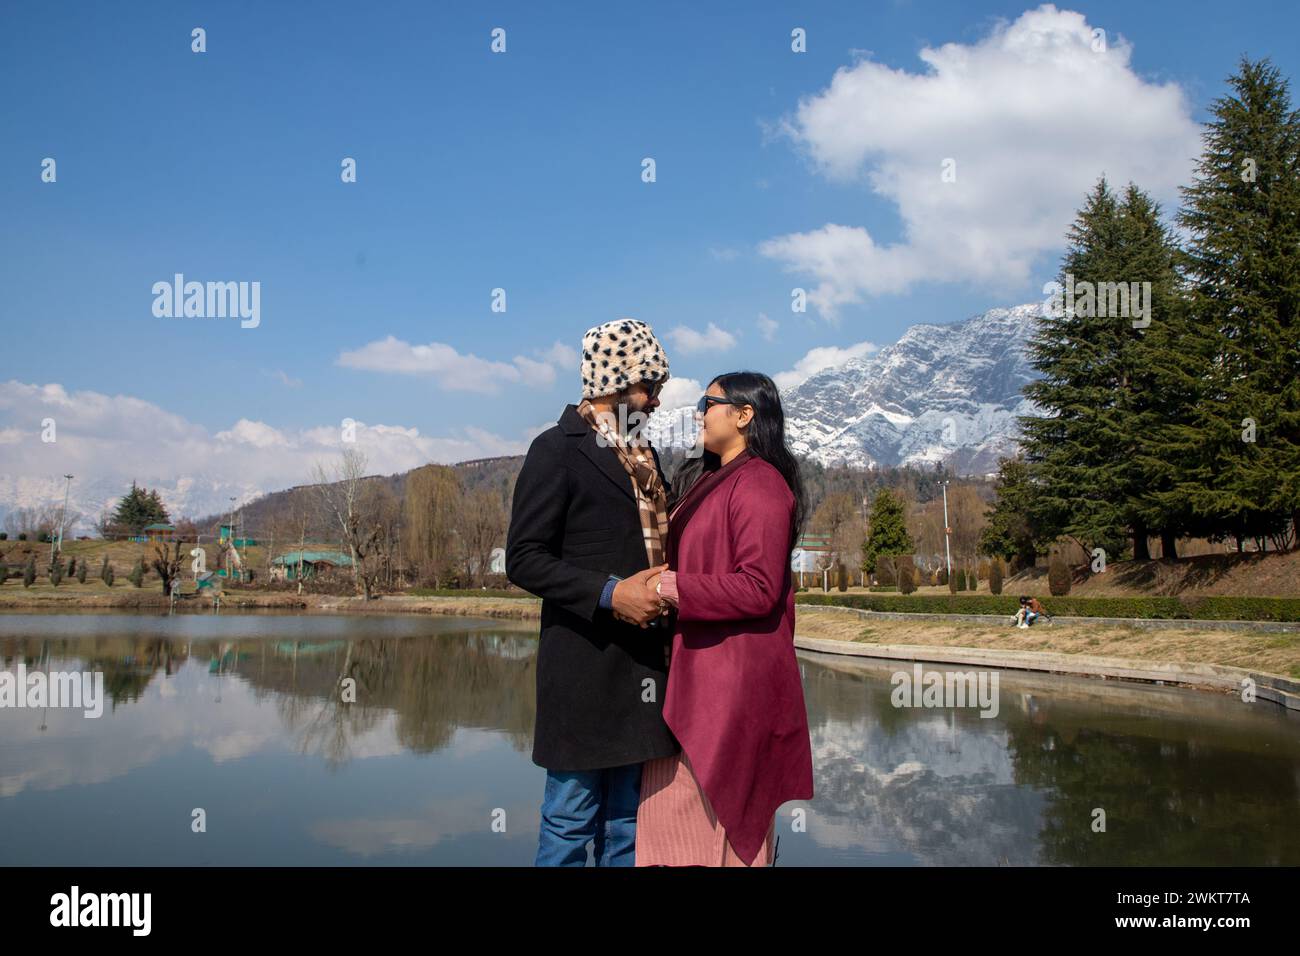 Ein indisches Touristenpaar posiert für ein Foto in einem Garten an einem sonnigen Tag in Srinagar. Das Wetter verbesserte sich in Jammu und Kaschmir nach drei Tagen unaufhörlichen Regens und Schneefall. Währenddessen verbesserten sich die Temperaturen tagsüber mit hellem Sonnenschein, der in vielen Teilen des Tals beobachtet wurde, einschließlich der Sommerhauptstadt Srinagar. Der Dal-See ist nicht nur die wichtigste Touristenattraktion, sondern auch die Heimat von über sechzigtausend Menschen, deren Haupteinkommensquelle aus Tourismus und Landwirtschaft stammt. Stockfoto